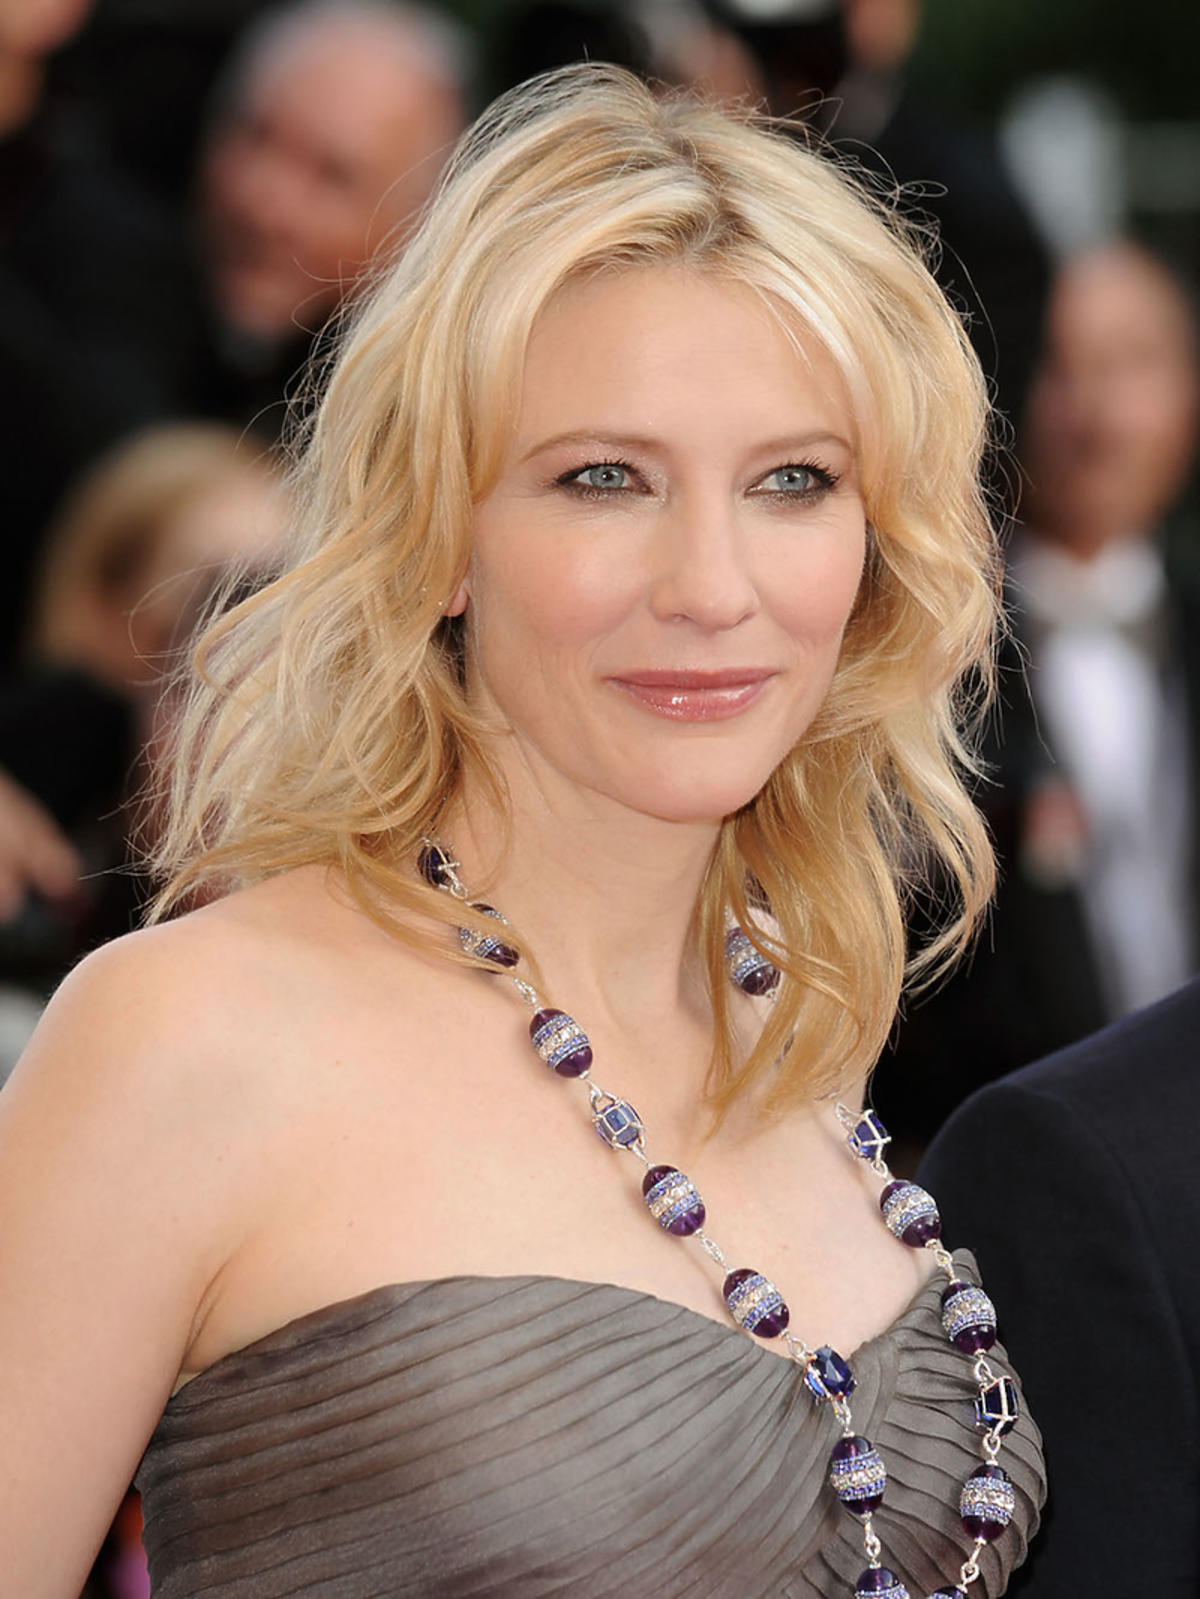 Cate Blanchett w biżuterii marki Chopard na Festiwalu Cannes, 2008